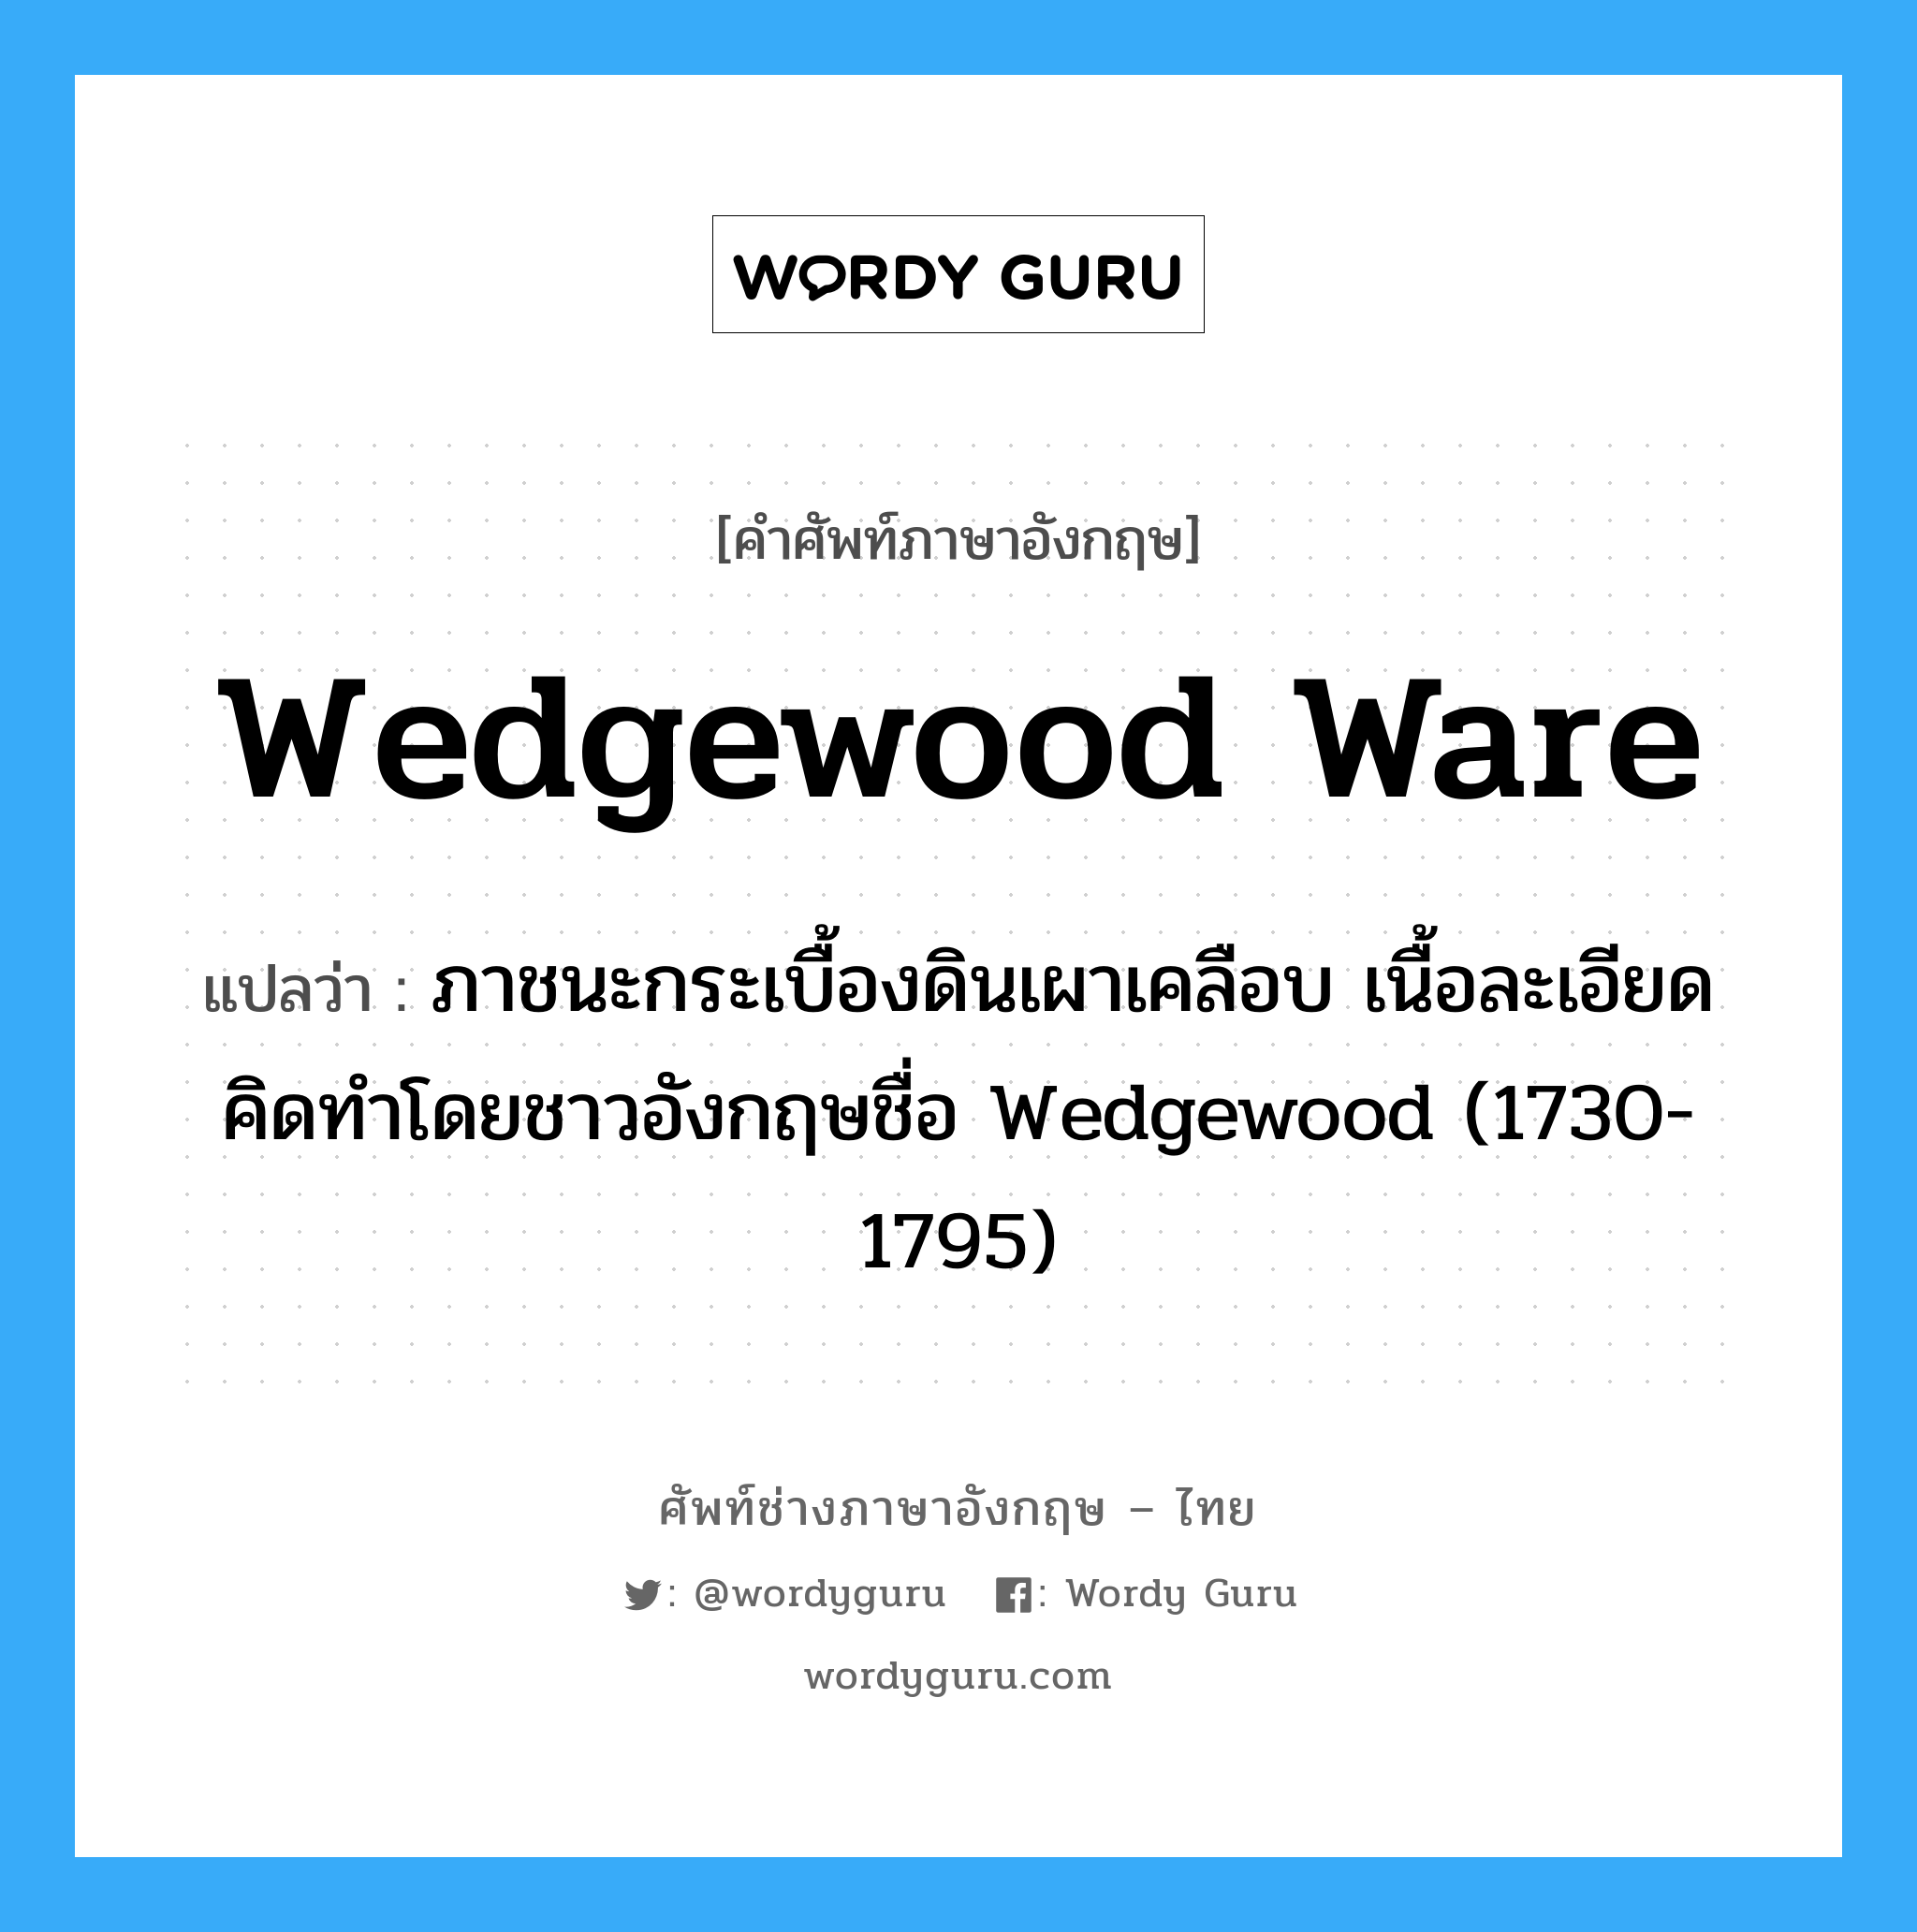 wedgewood ware แปลว่า?, คำศัพท์ช่างภาษาอังกฤษ - ไทย wedgewood ware คำศัพท์ภาษาอังกฤษ wedgewood ware แปลว่า ภาชนะกระเบื้องดินเผาเคลือบ เนื้อละเอียด คิดทำโดยชาวอังกฤษชื่อ Wedgewood (1730-1795)